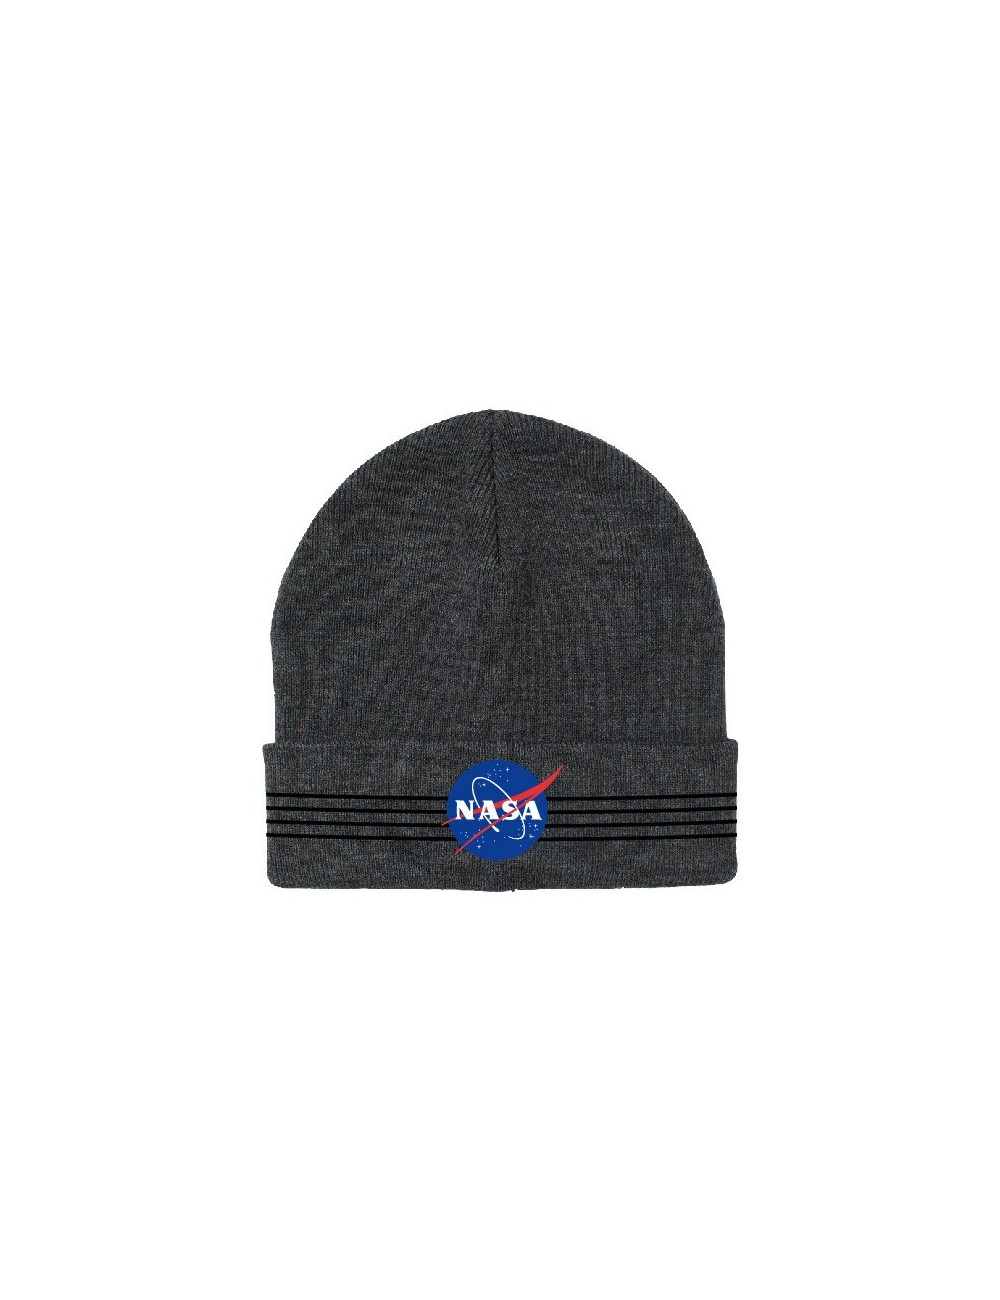 Caciula logo NASA, 54-56 cm, gri